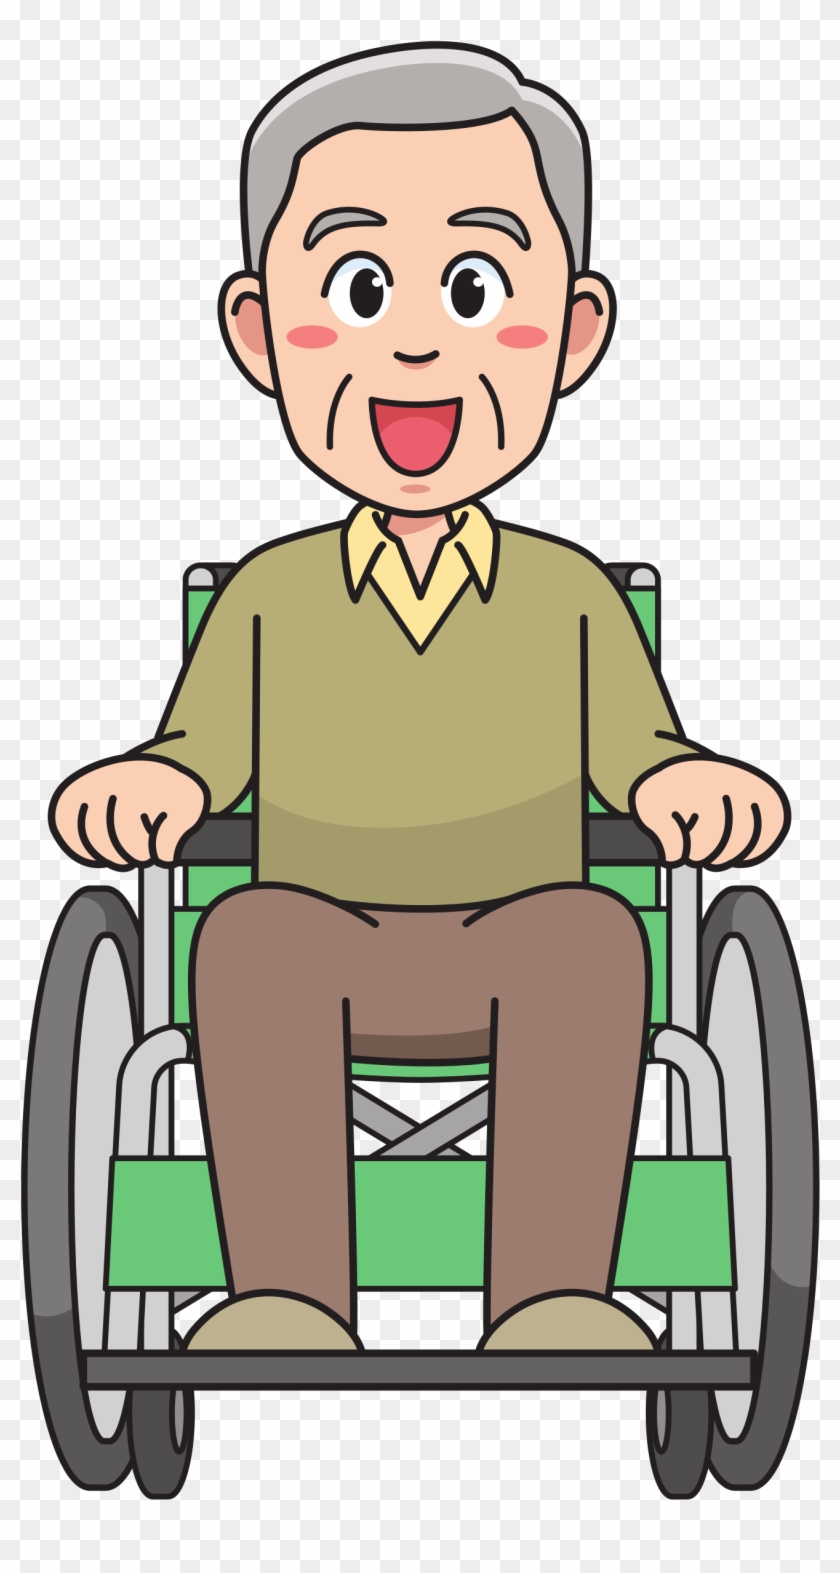 Big Image - 車椅子 に 乗っ て いる 人 イラスト #354586